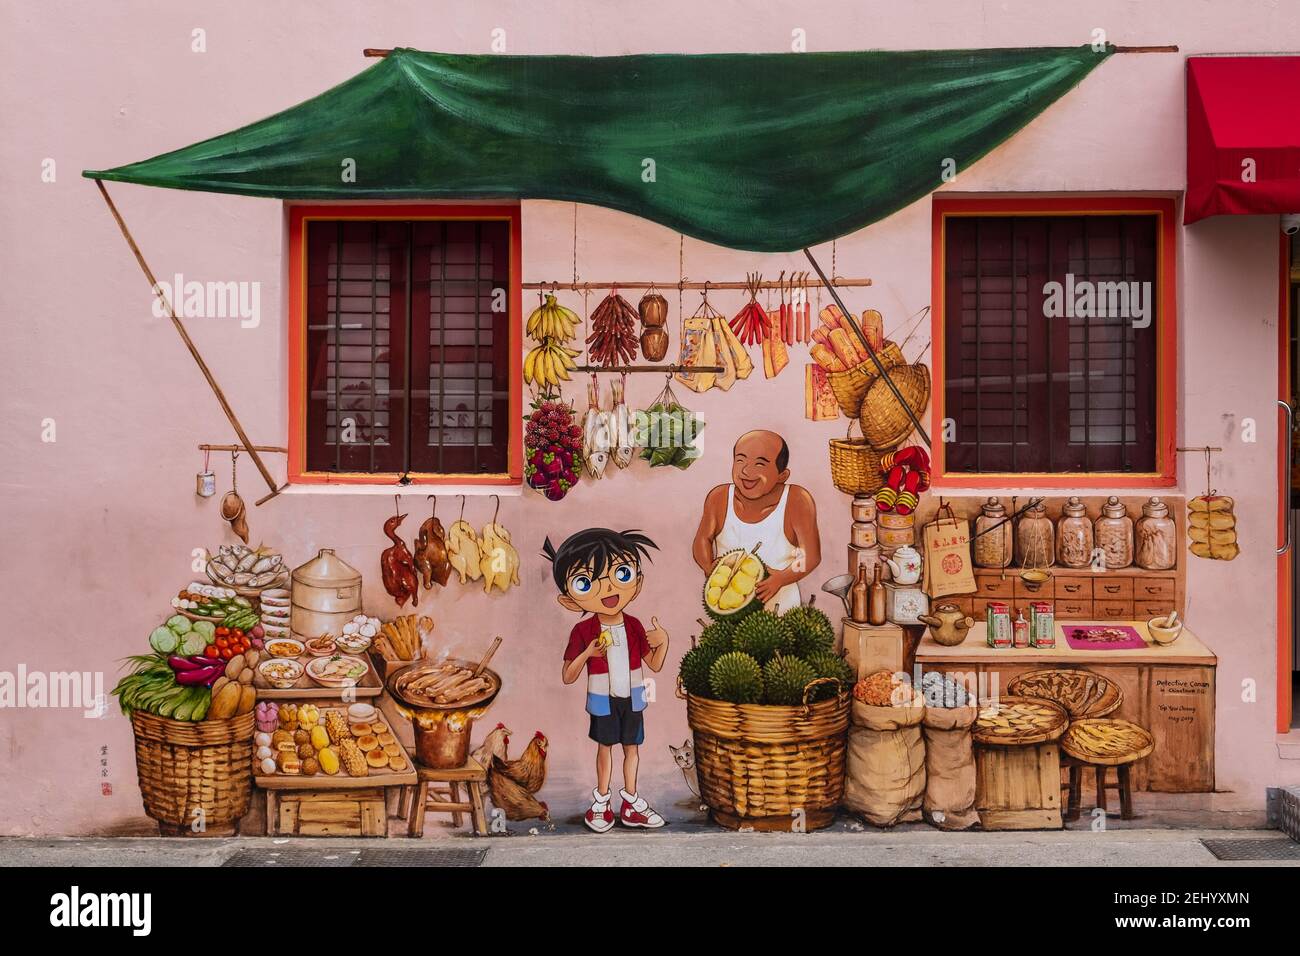 Street Art in Chinatown, Singapore Stock Photo